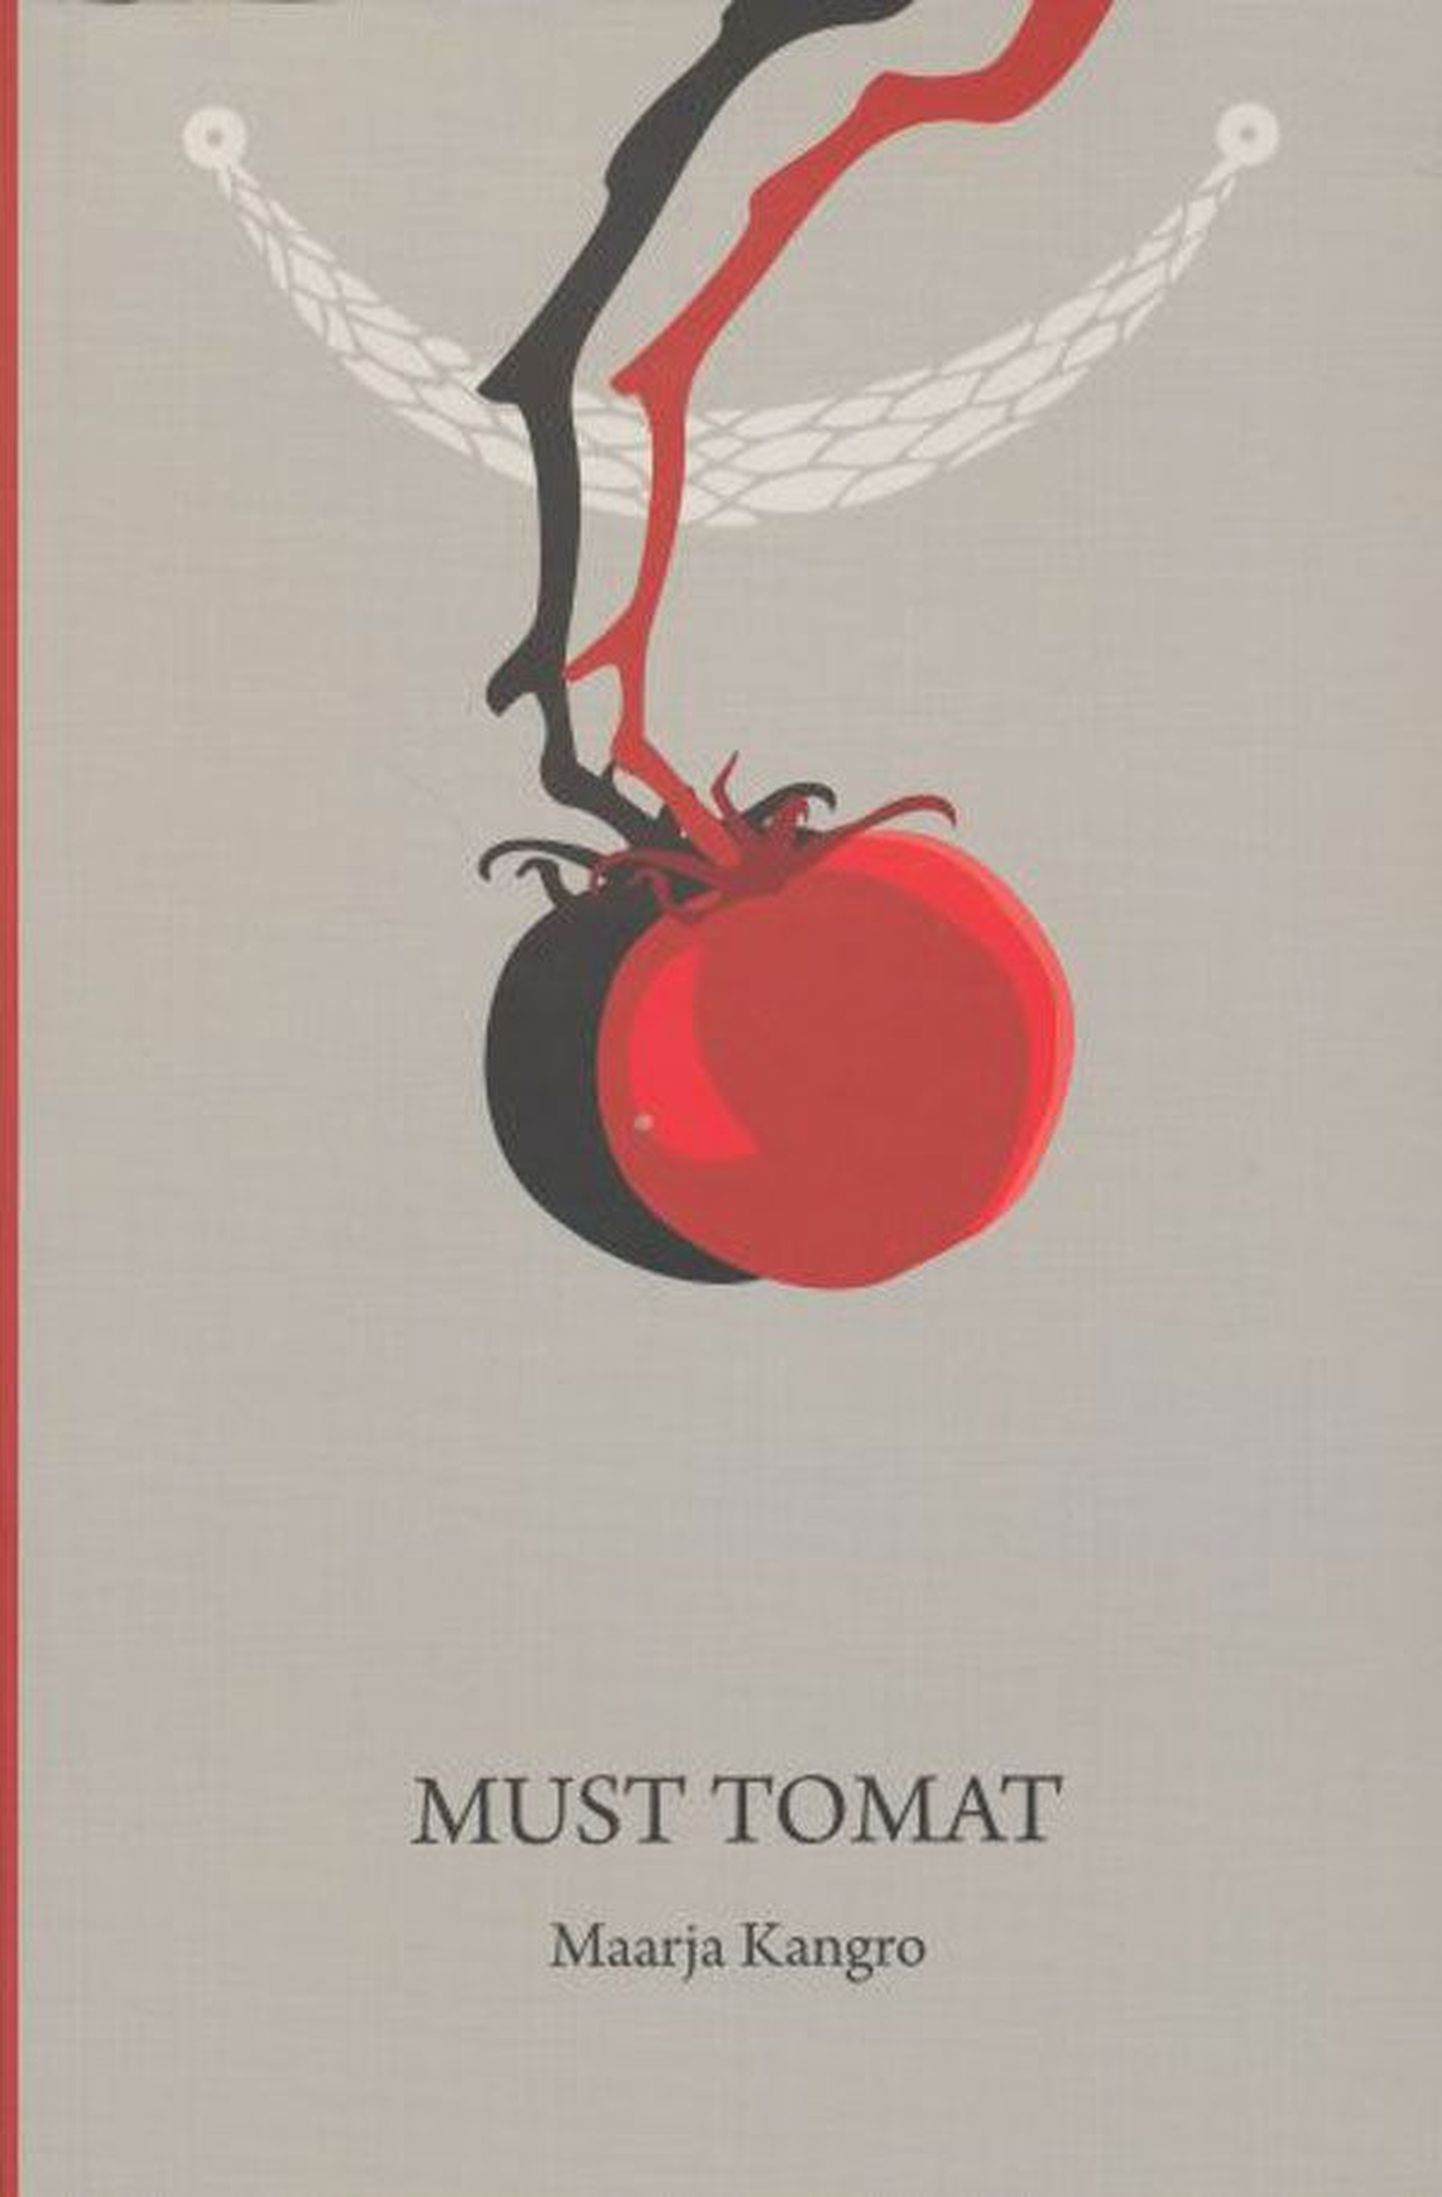 Raamat
Maarja Kangro
«Must tomat»
Eesti Keele Sihtasutus 2013